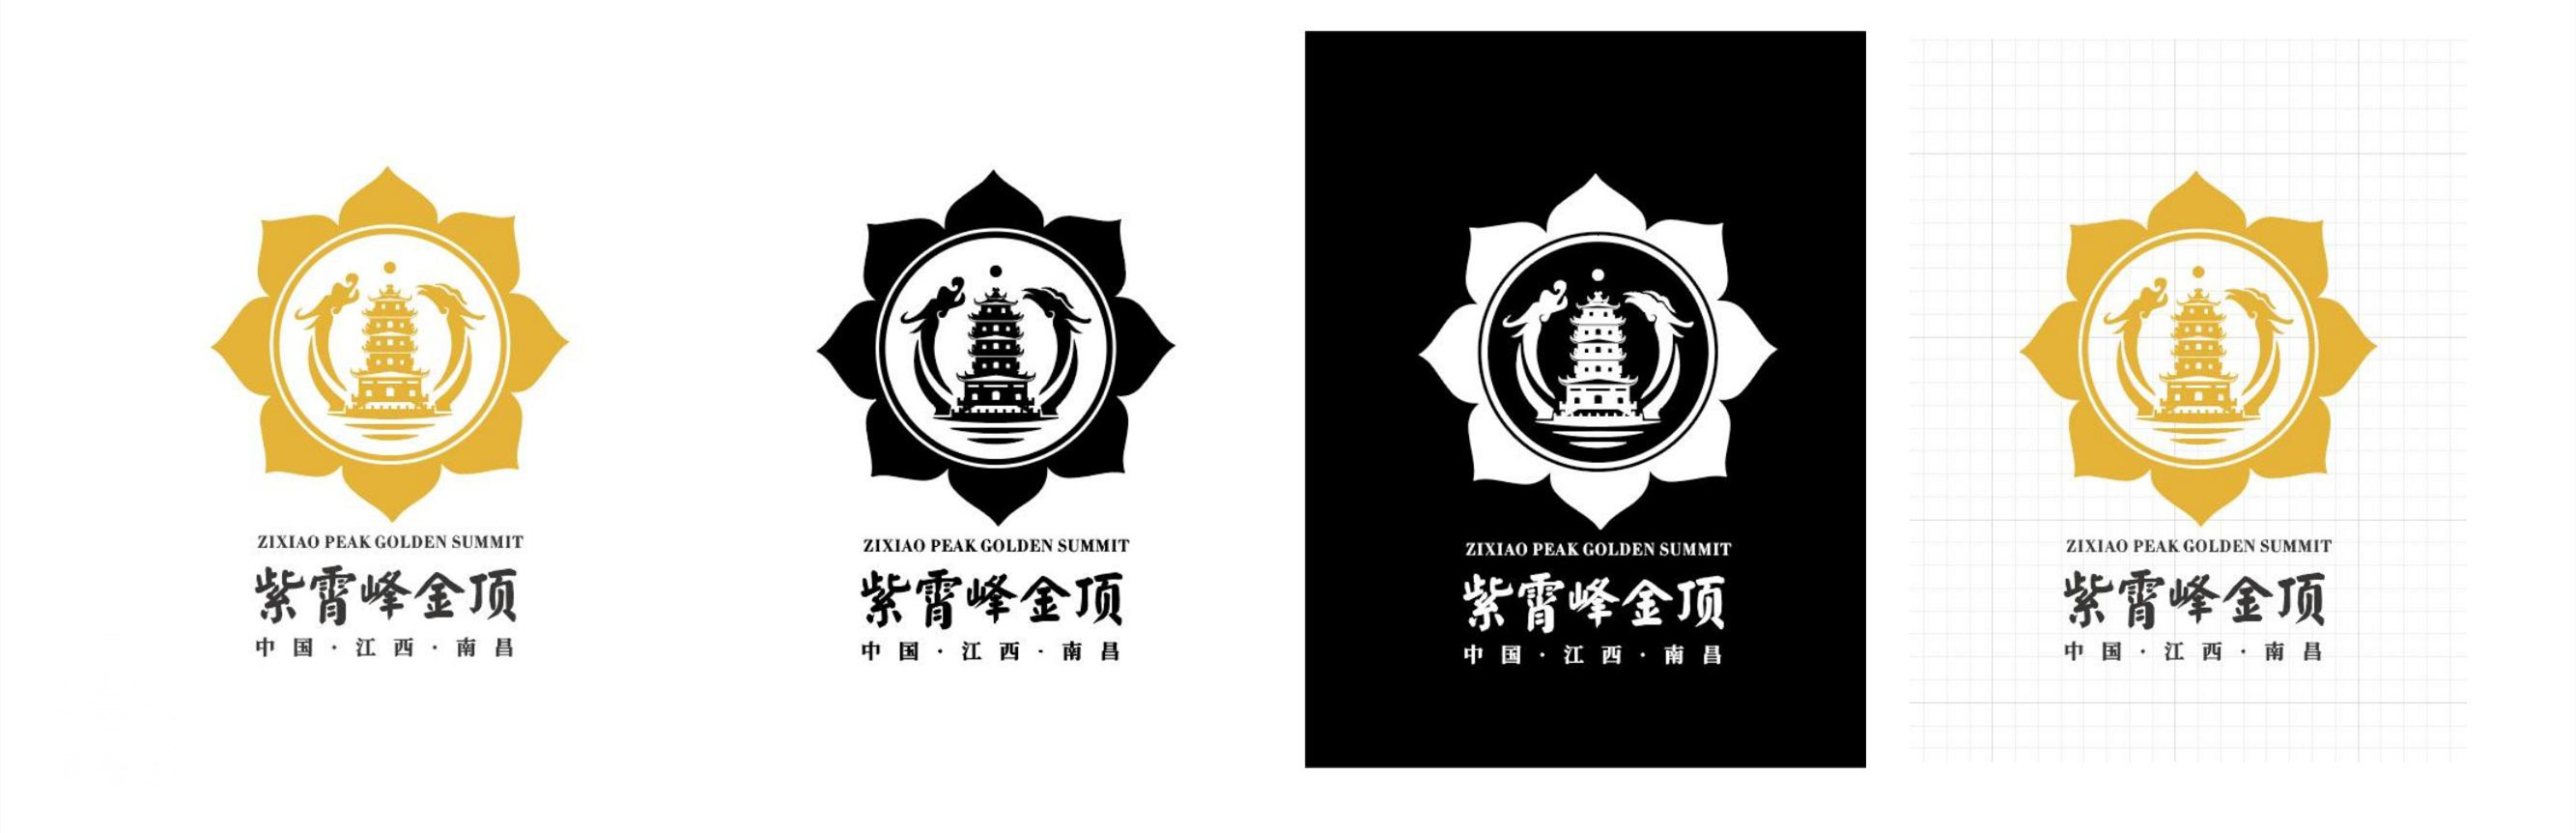 紫霄峰金顶 logo定稿汇报_02.jpg